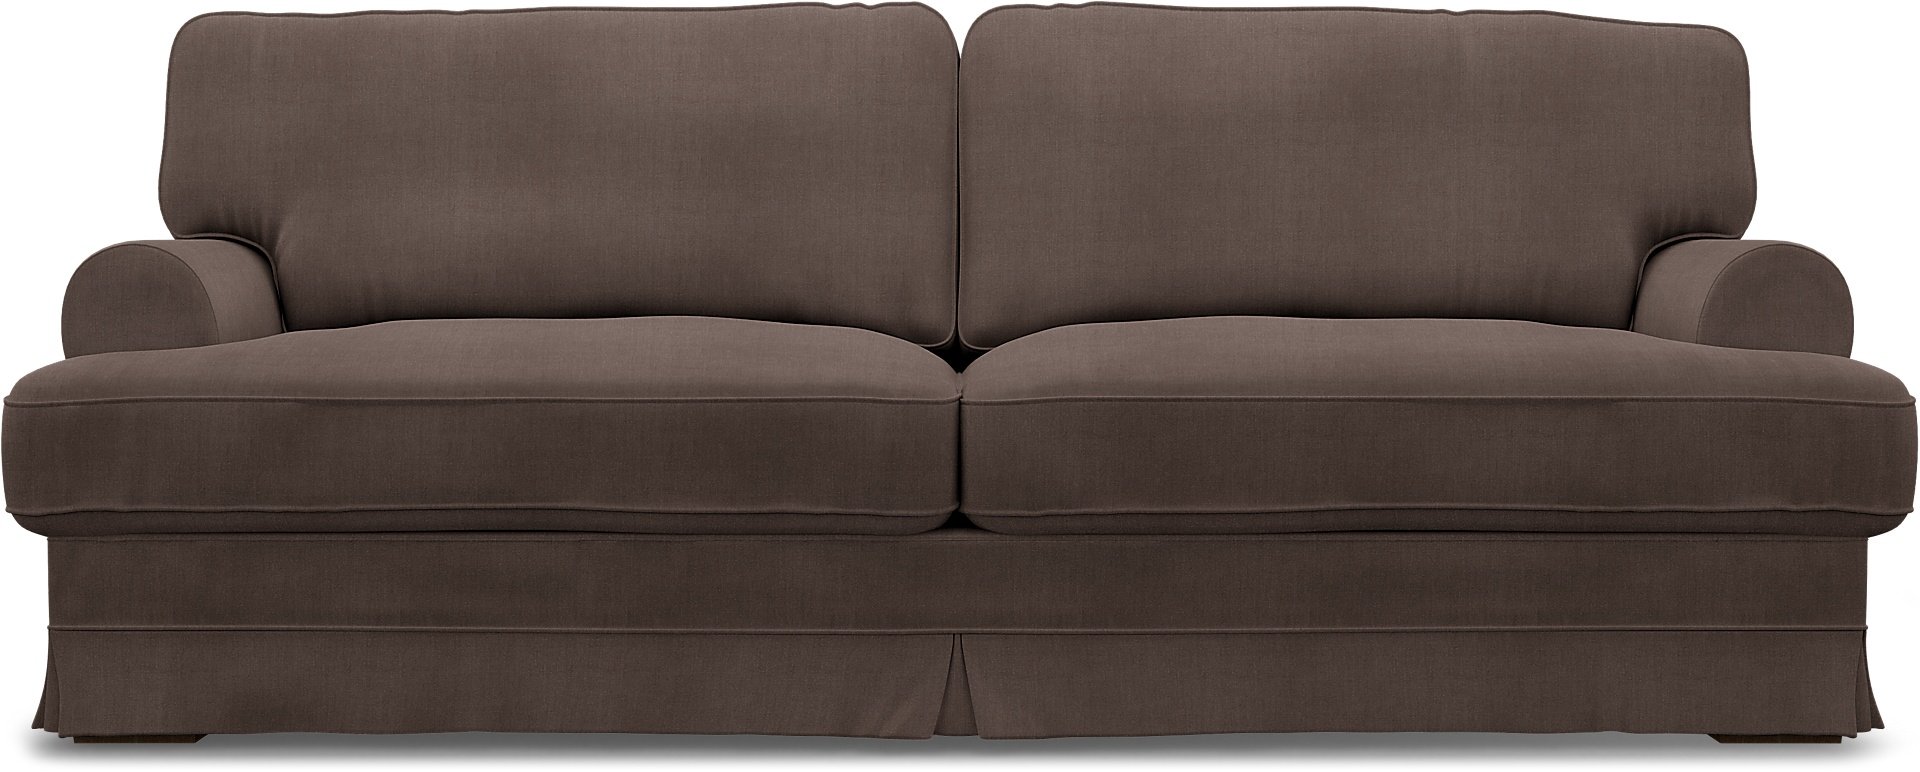 IKEA - Ekeskog 3 Seater Sofa Cover, Cocoa, Linen - Bemz